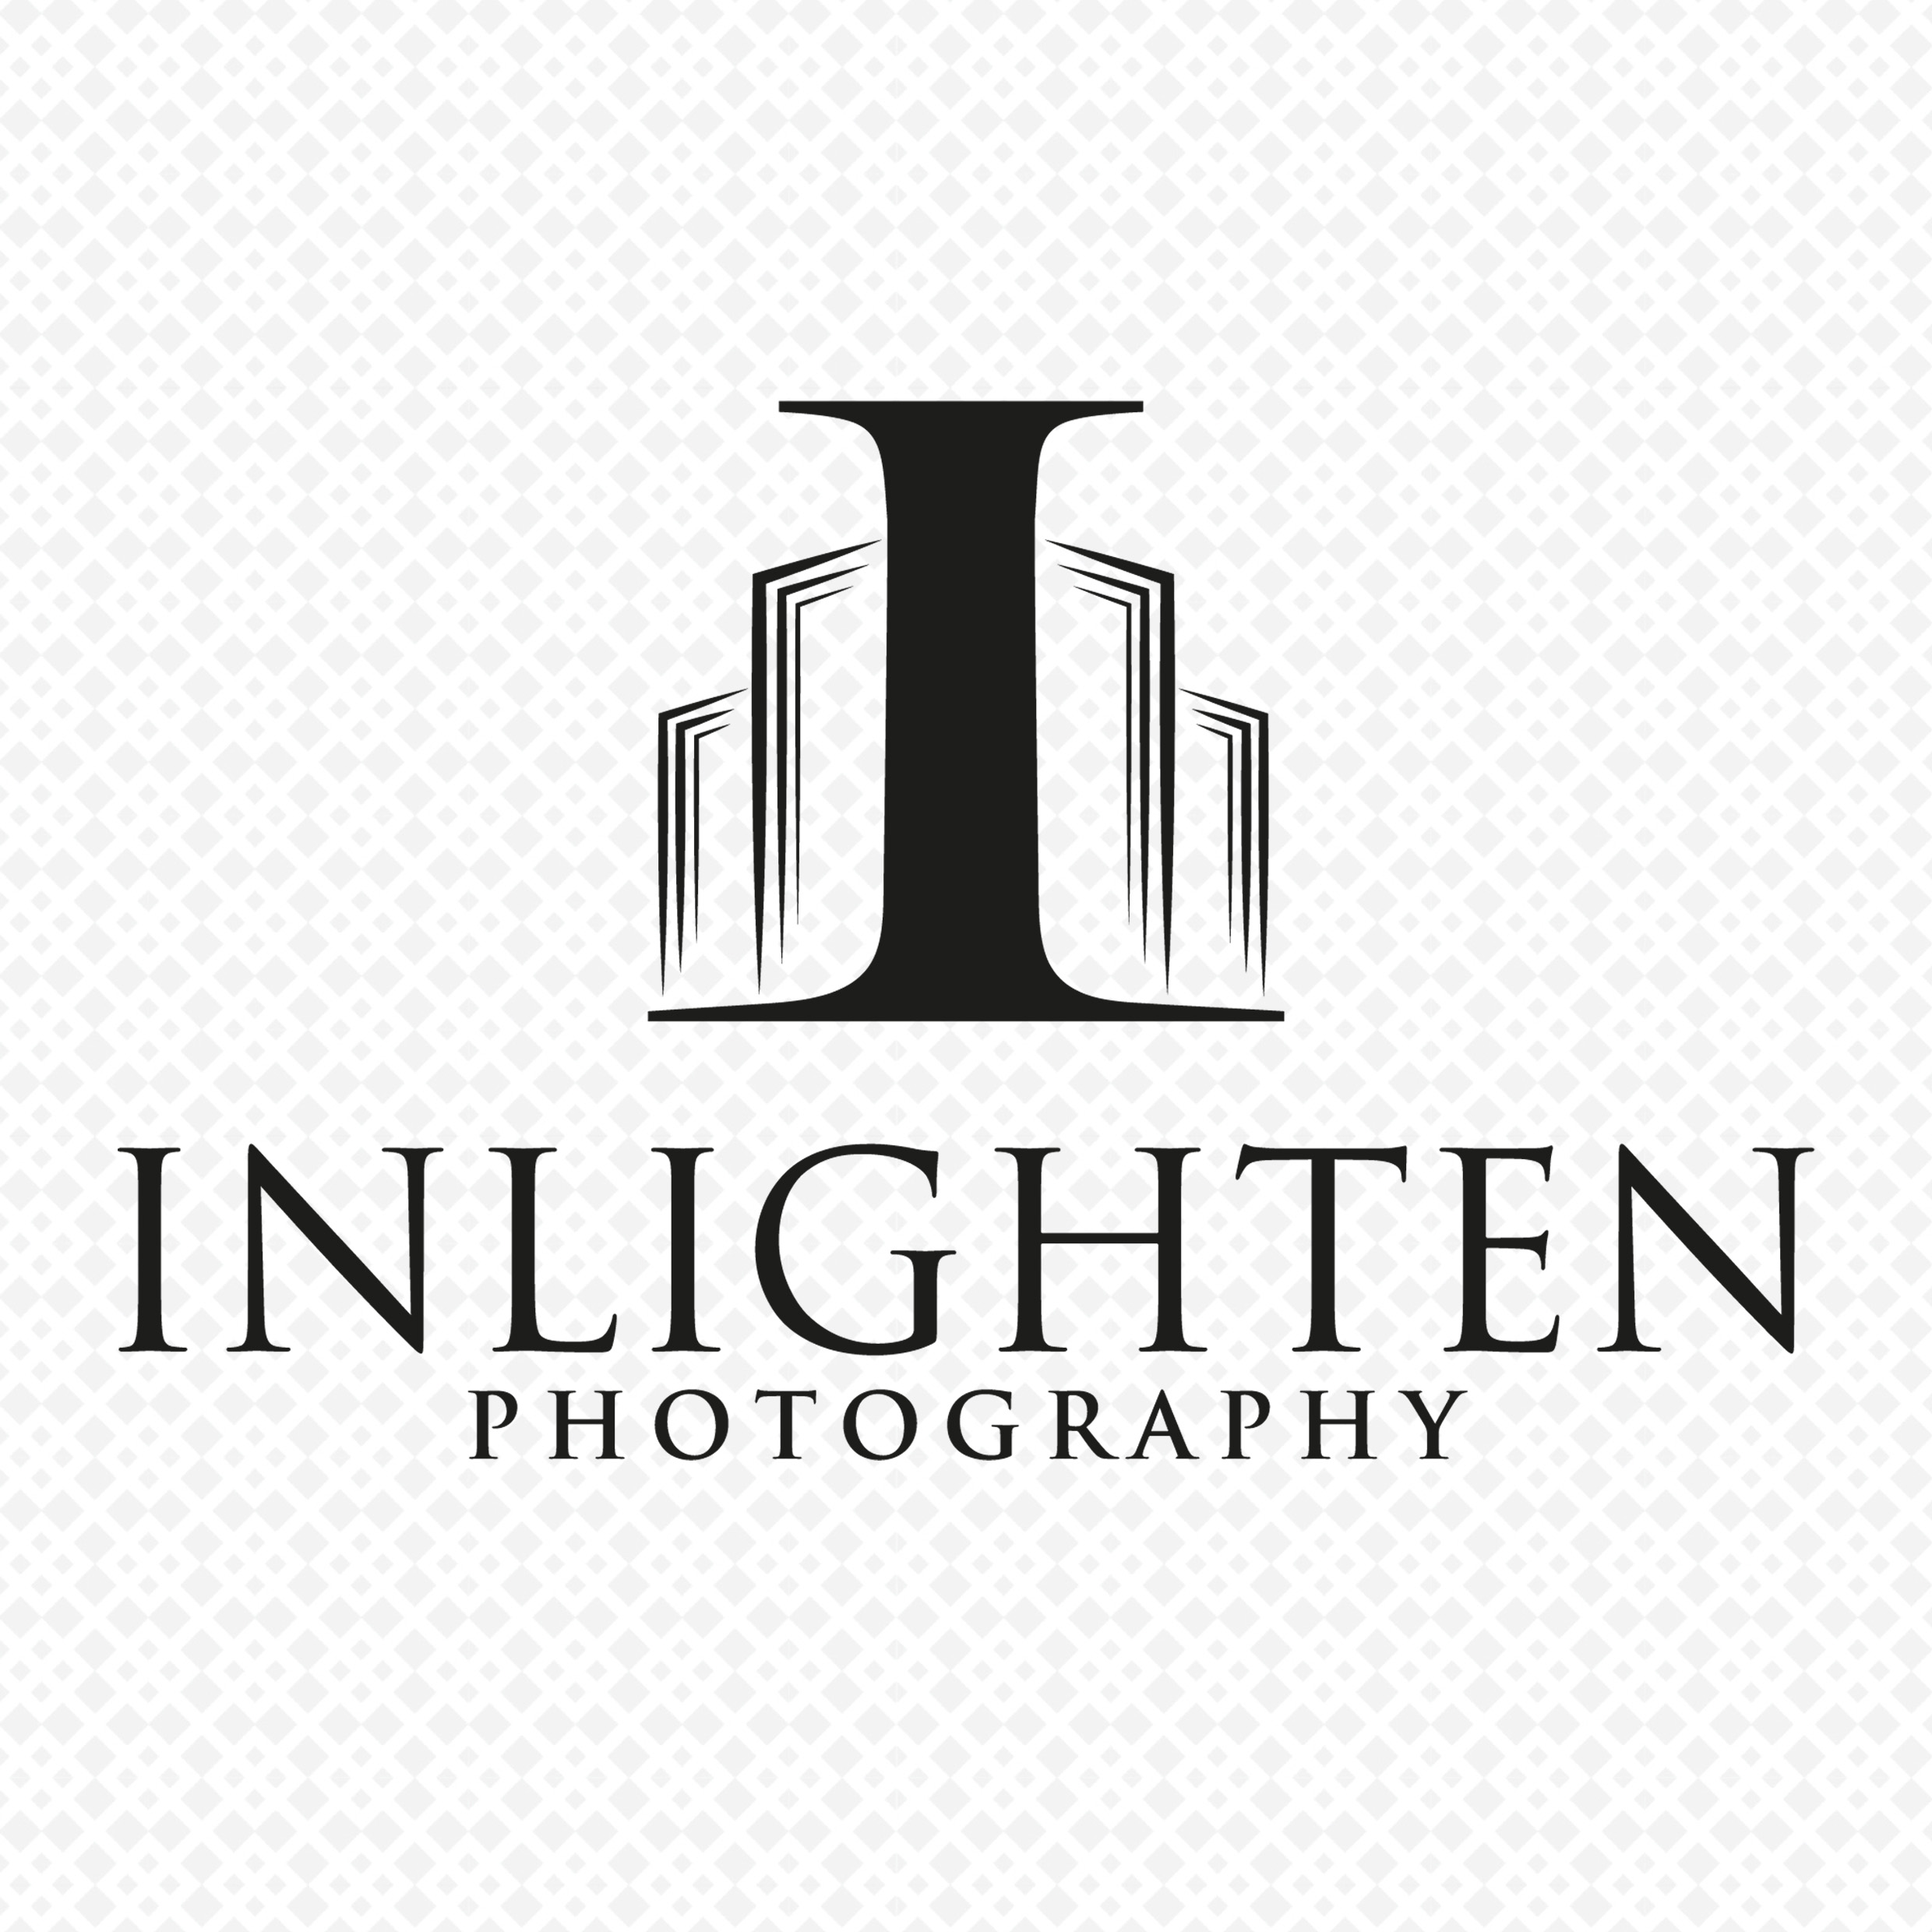 Inlighten Photography